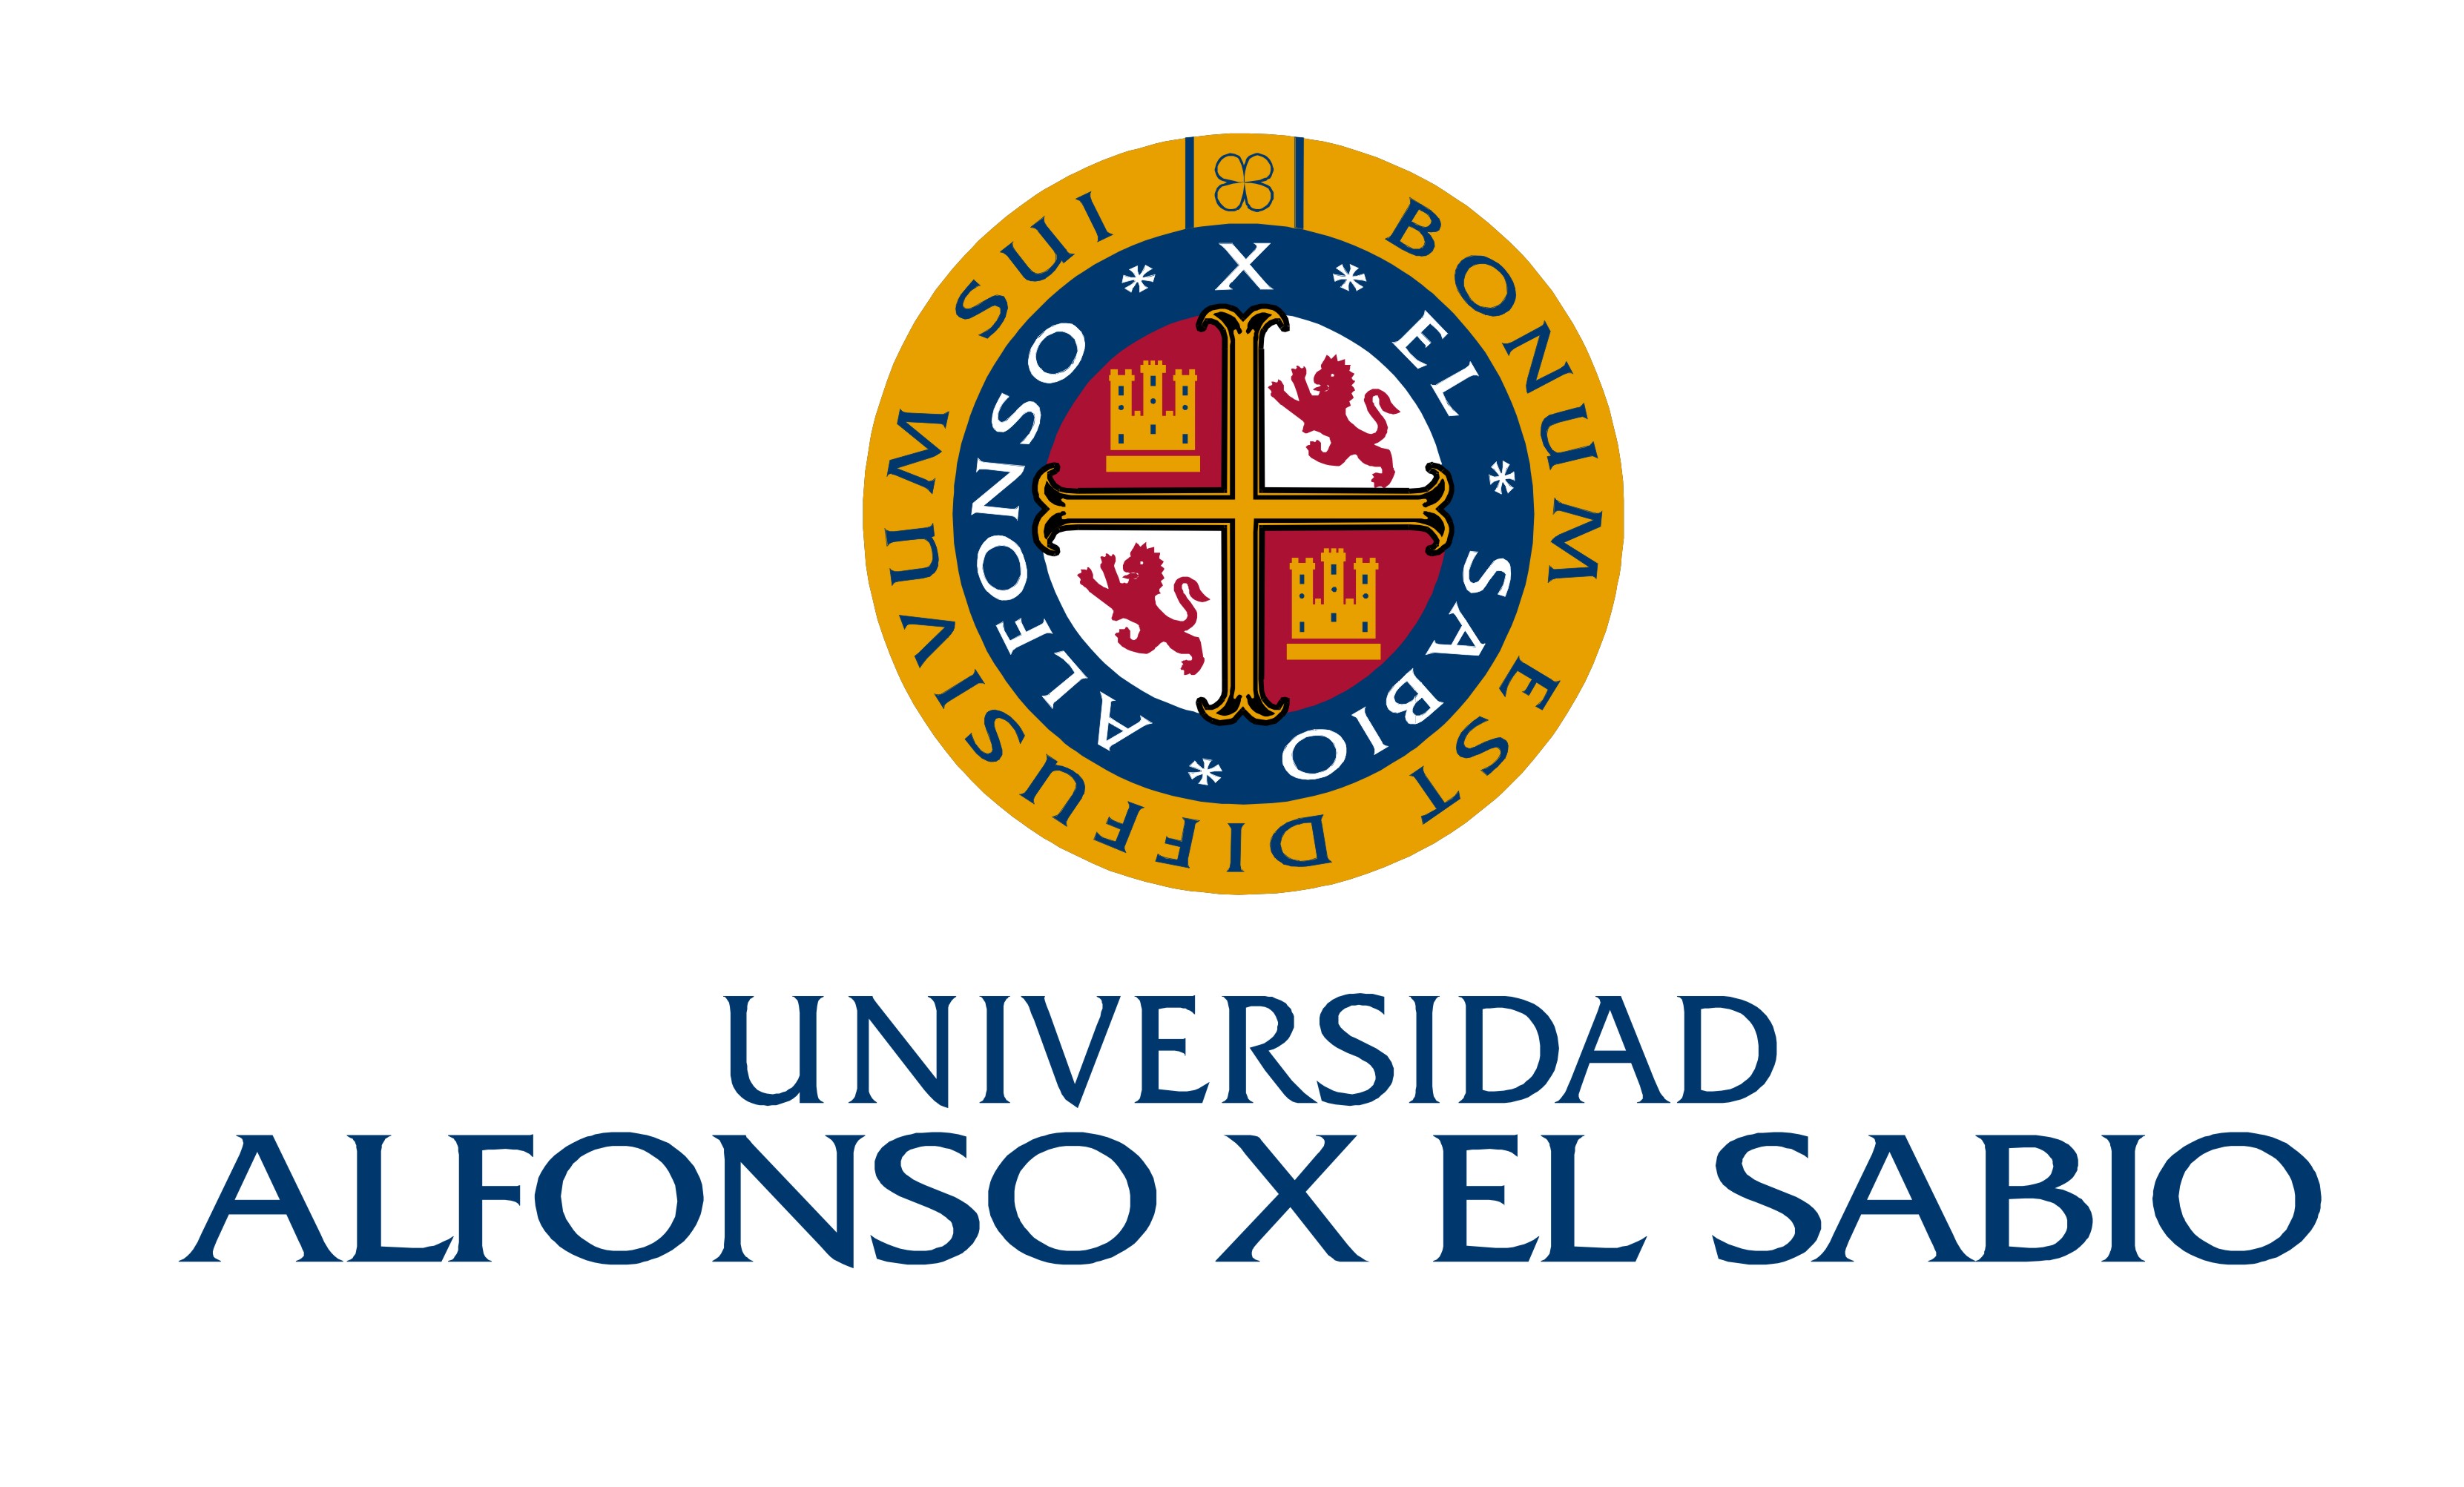 西班牙智者阿方索十世大学 logo